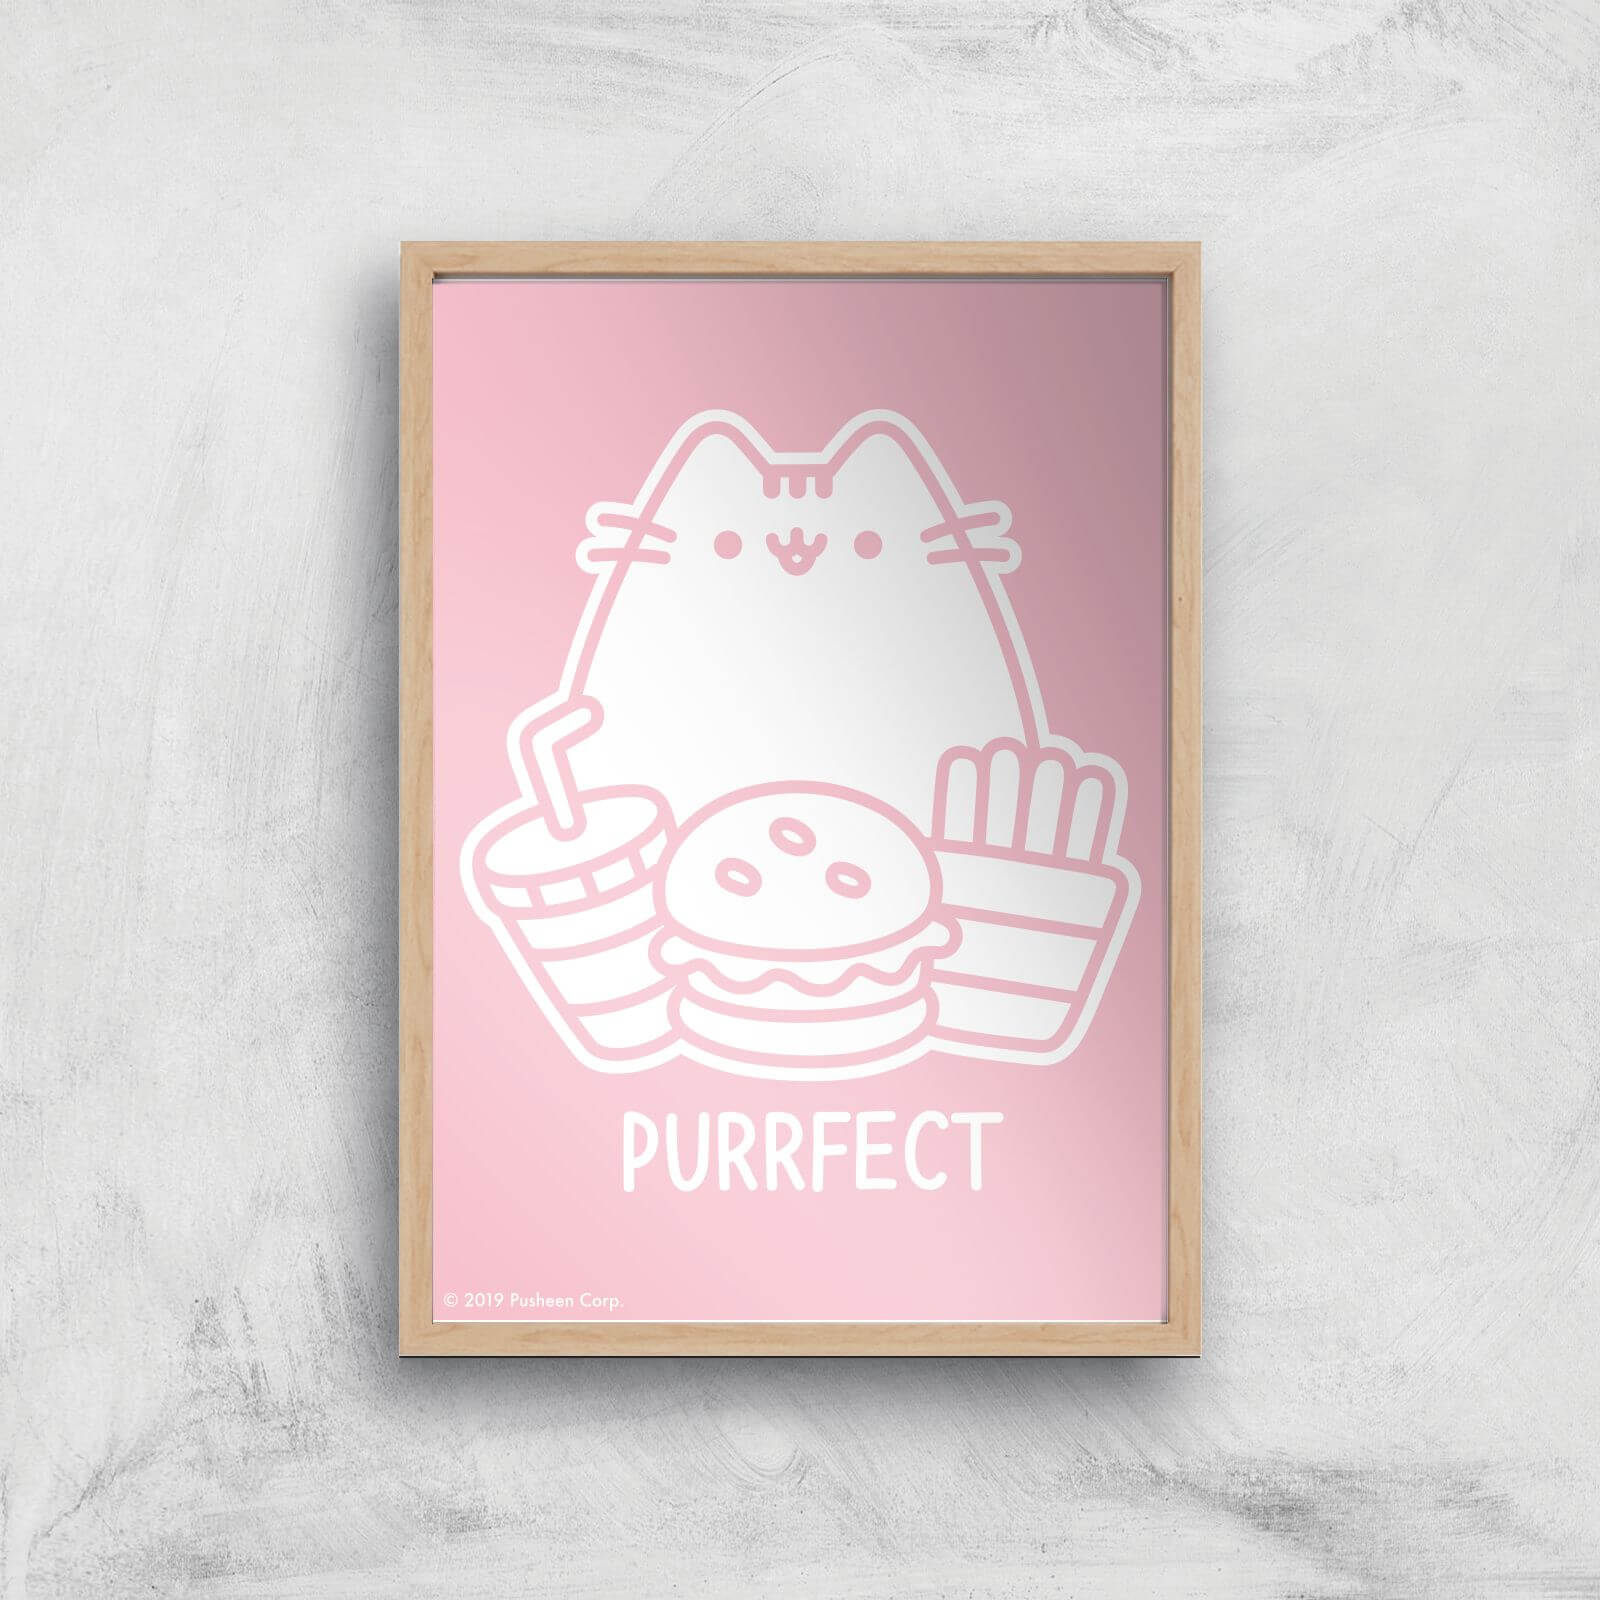 Pusheen Purrfect Junk Food Giclee Art Print - A2 - Wooden Frame